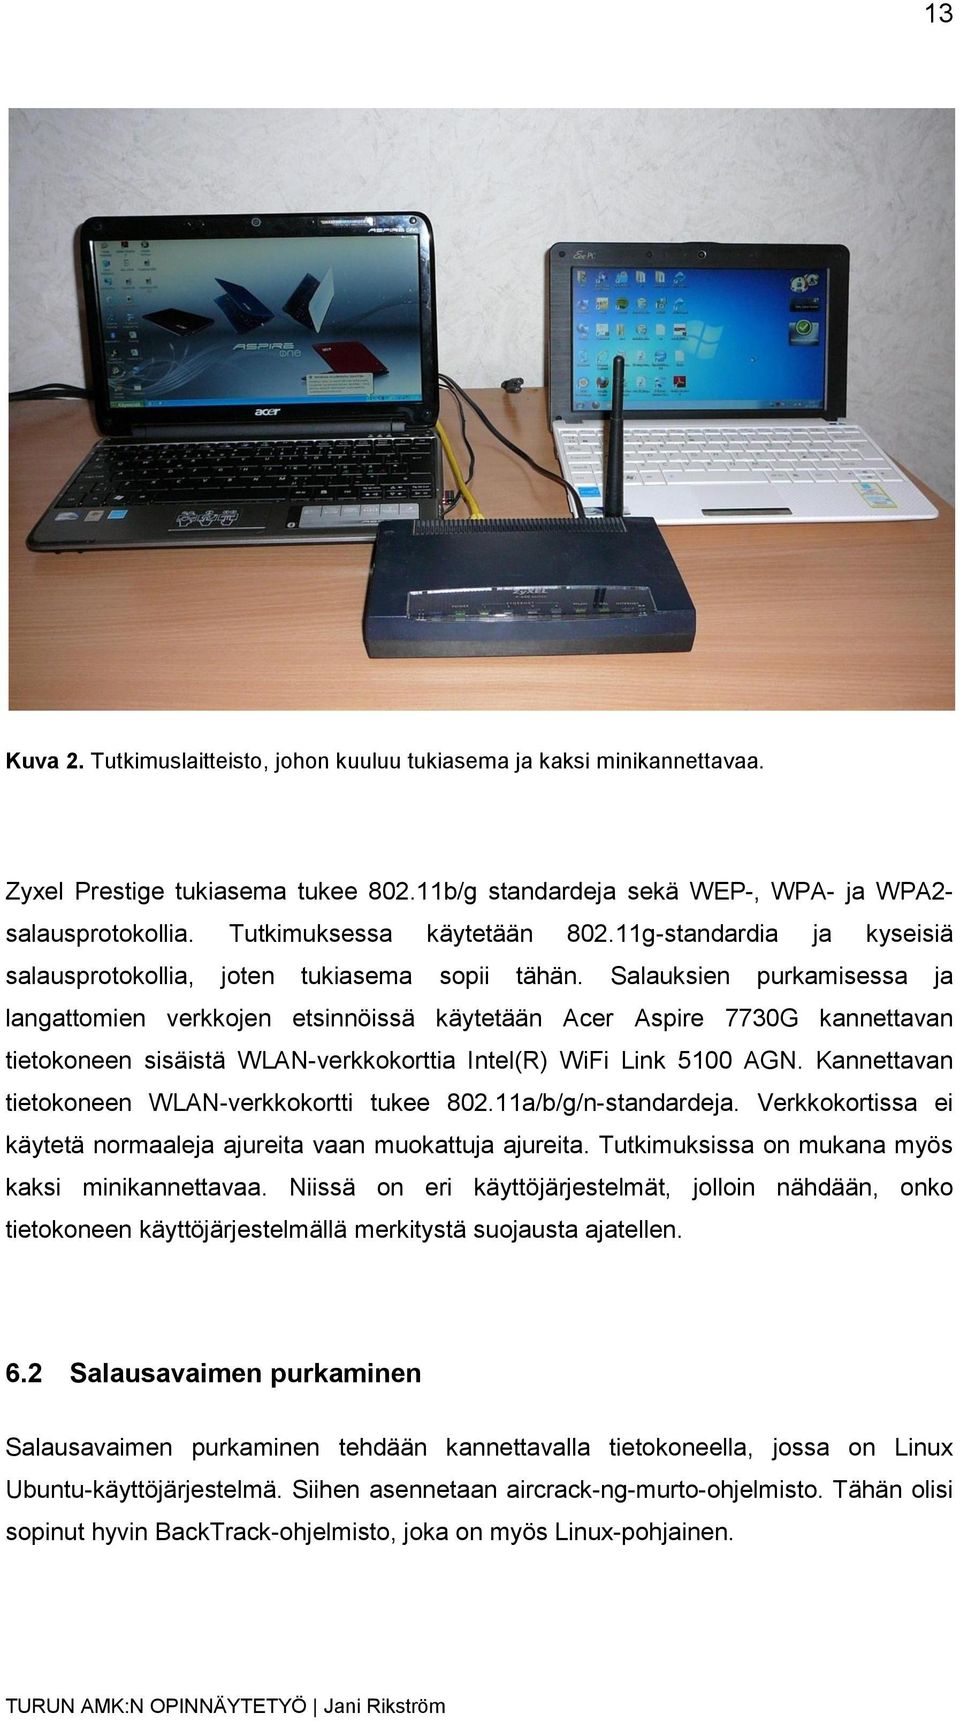 Salauksien purkamisessa ja langattomien verkkojen etsinnöissä käytetään Acer Aspire 7730G kannettavan tietokoneen sisäistä WLAN-verkkokorttia Intel(R) WiFi Link 5100 AGN.